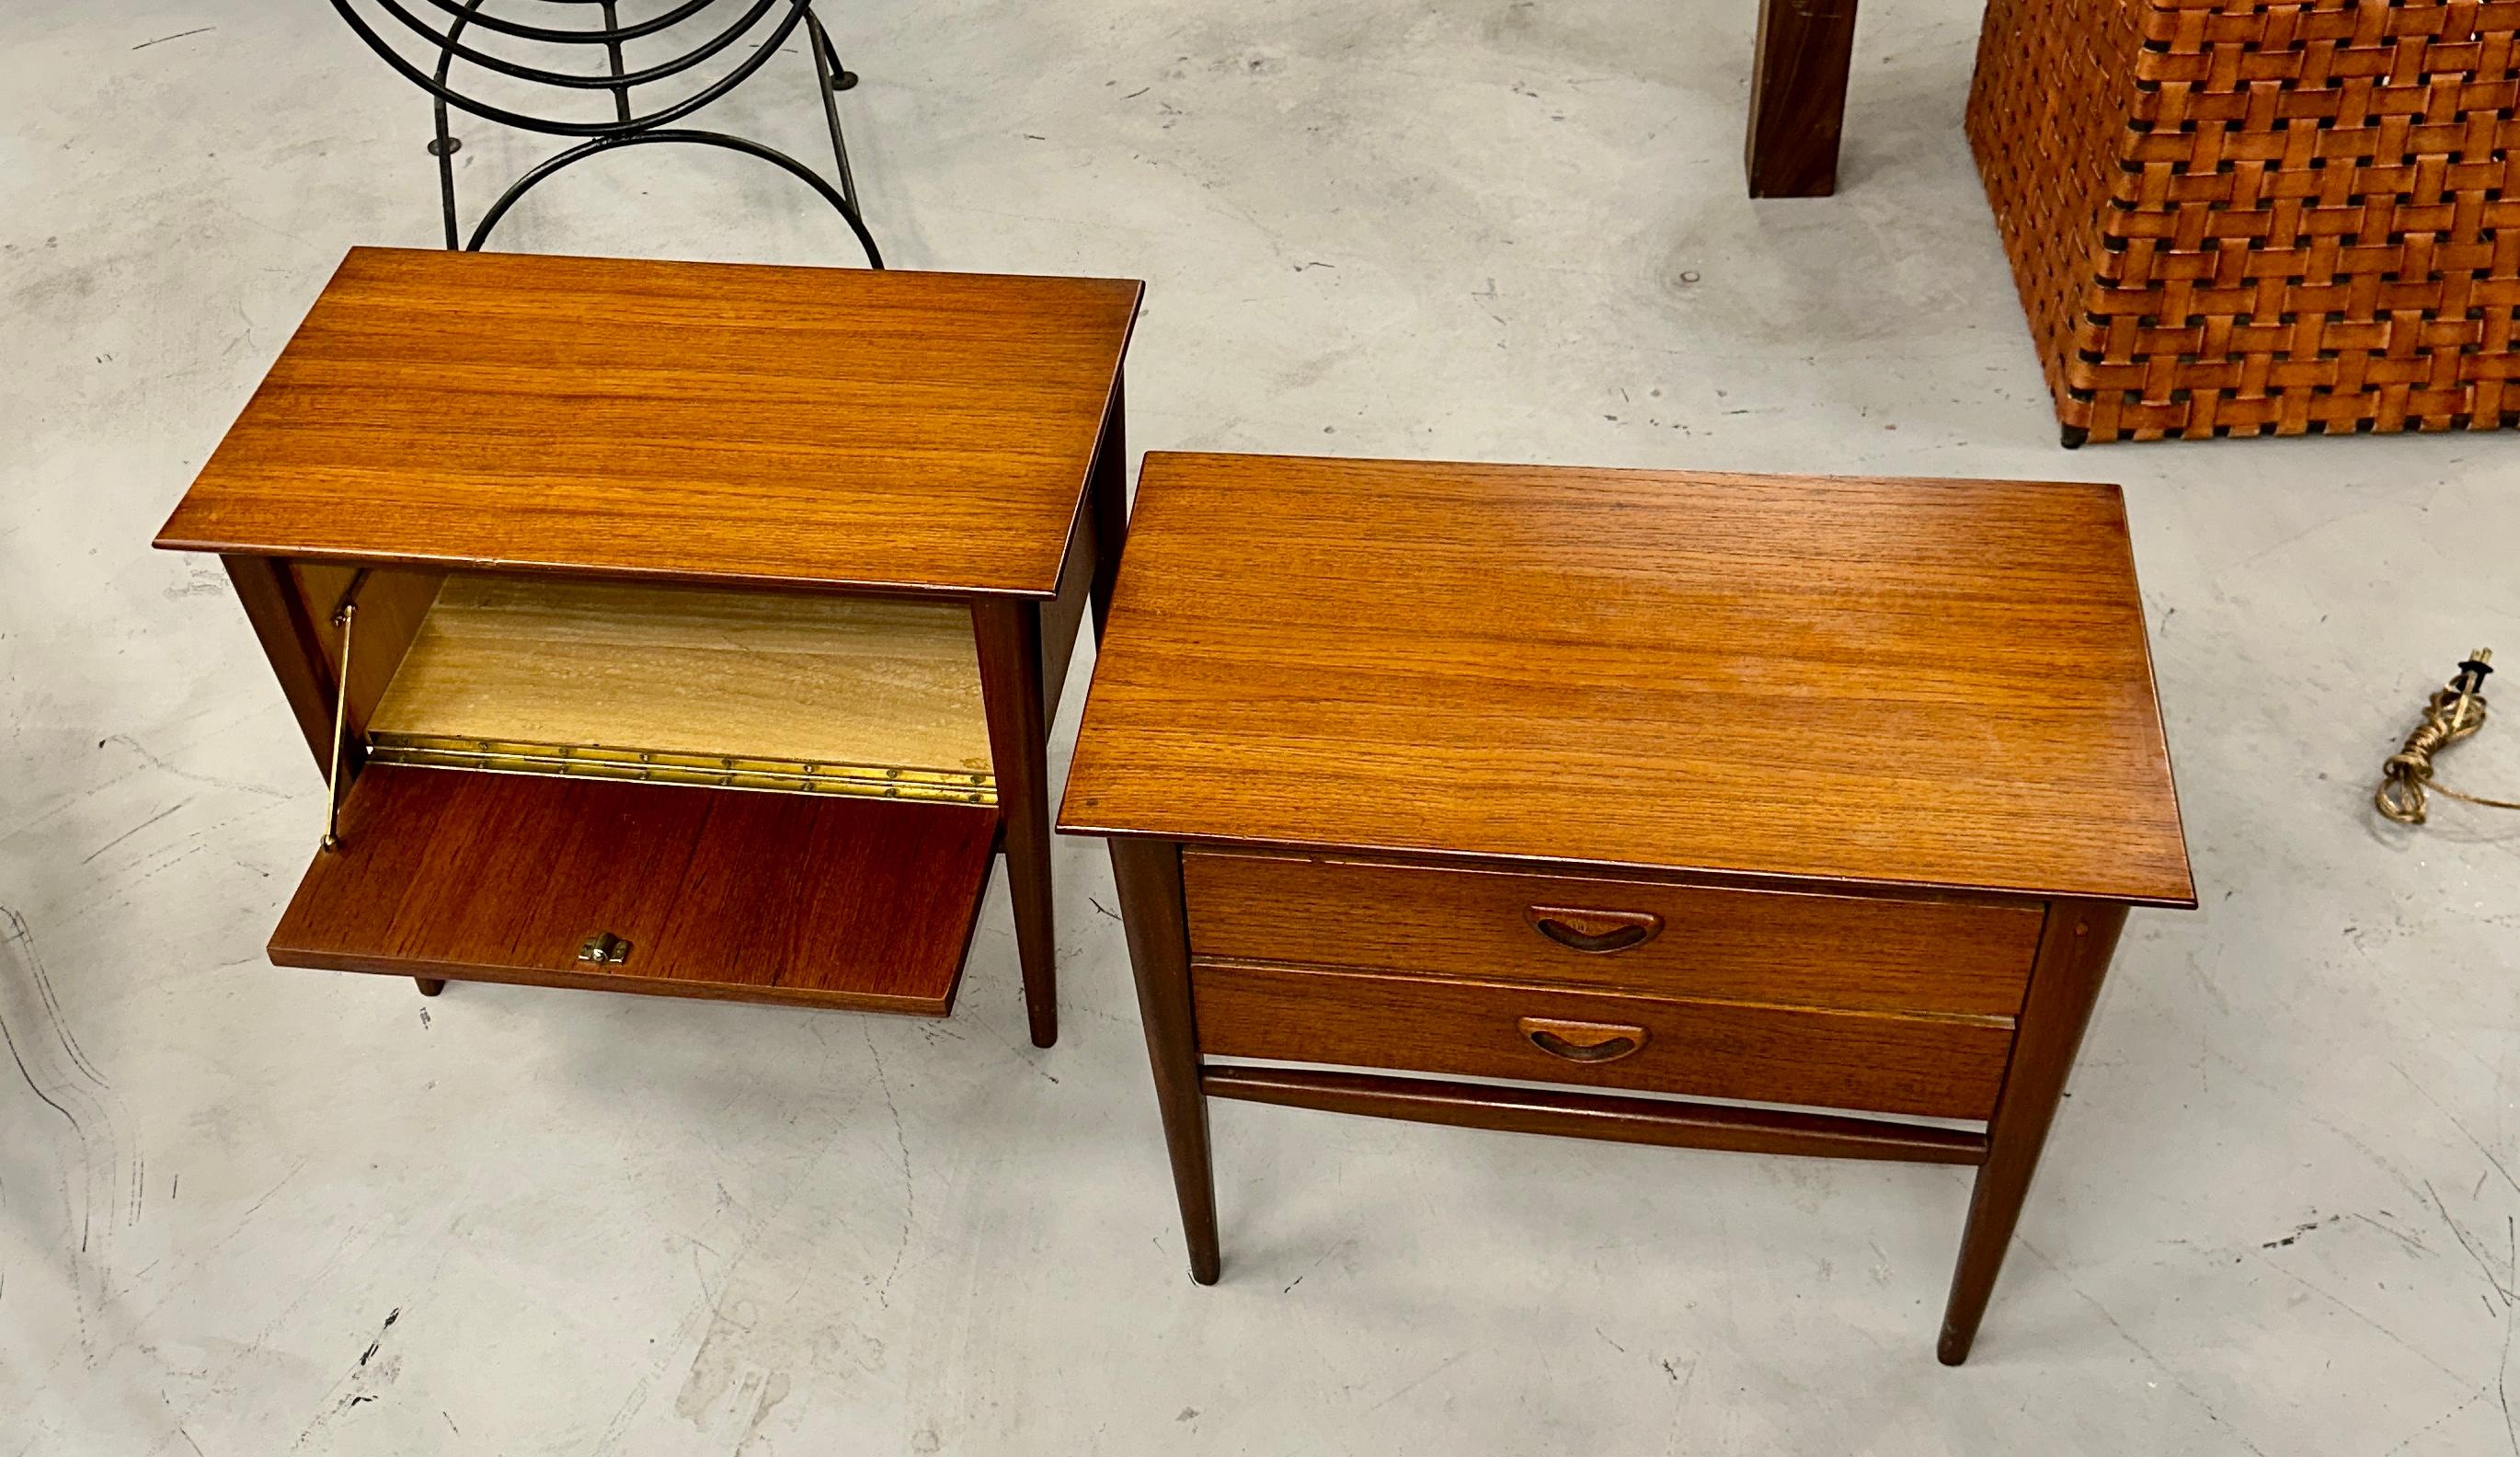 Pair of Louis Van Teeffelen Teak SIde Tables Nightstands In Good Condition For Sale In Palm Springs, CA